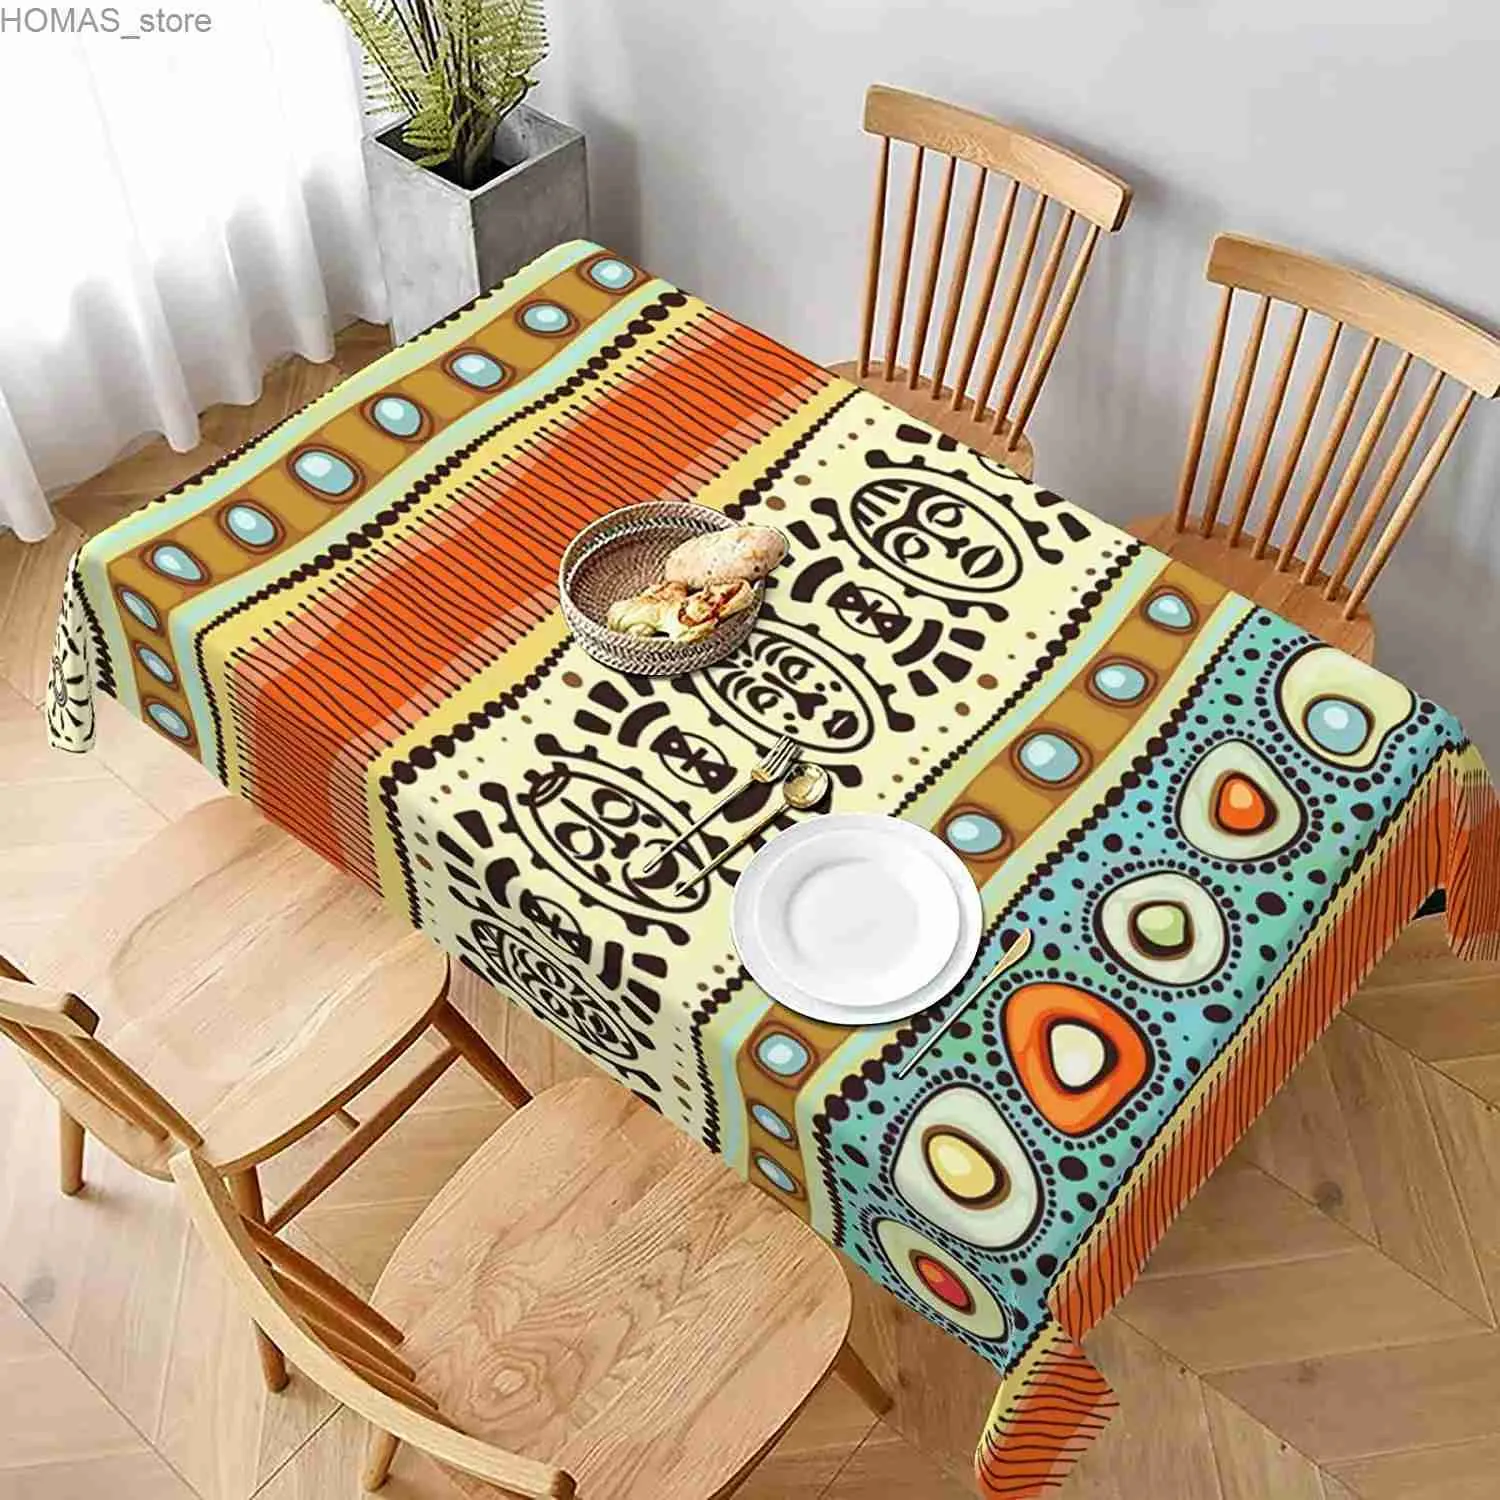 テーブルクロスアフリカンエスニックプリント長方形のテーブルクロスキッチンダイニングテーブル装飾再利用可能な防水テーブルクロスホリデーパーティーデコレーションY240401